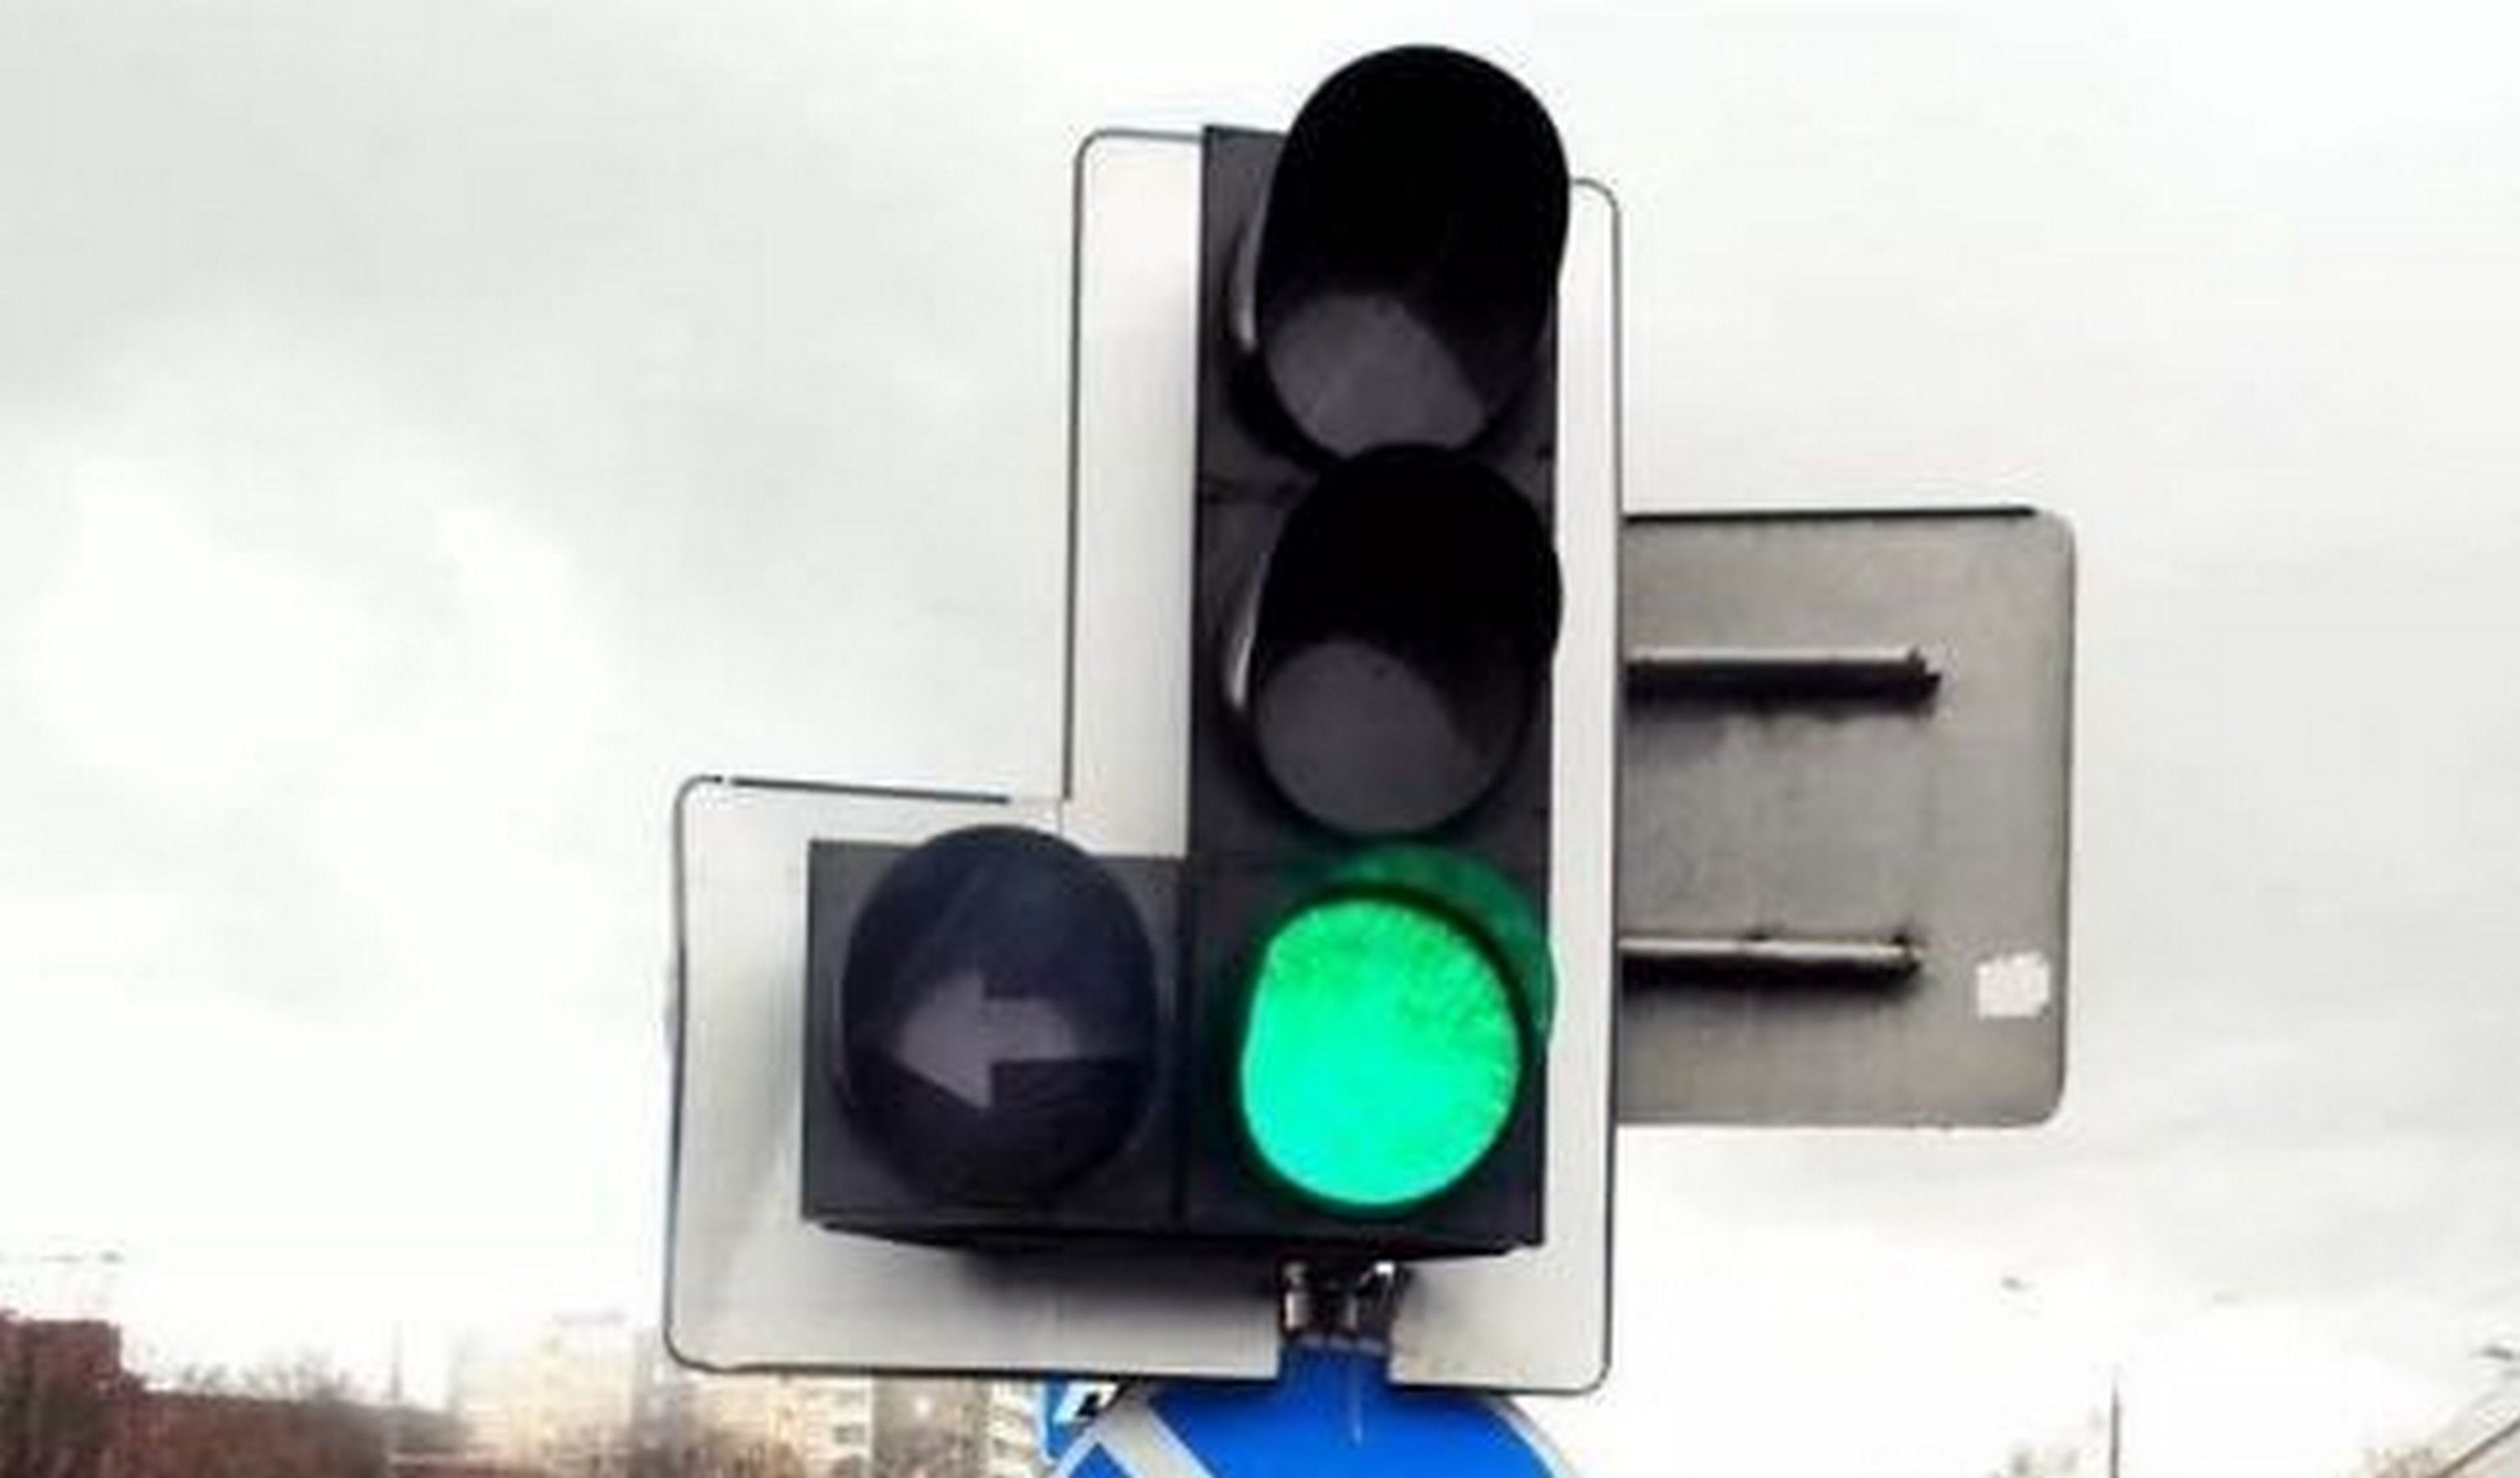 Черная стрелка на зеленом фоне светофора